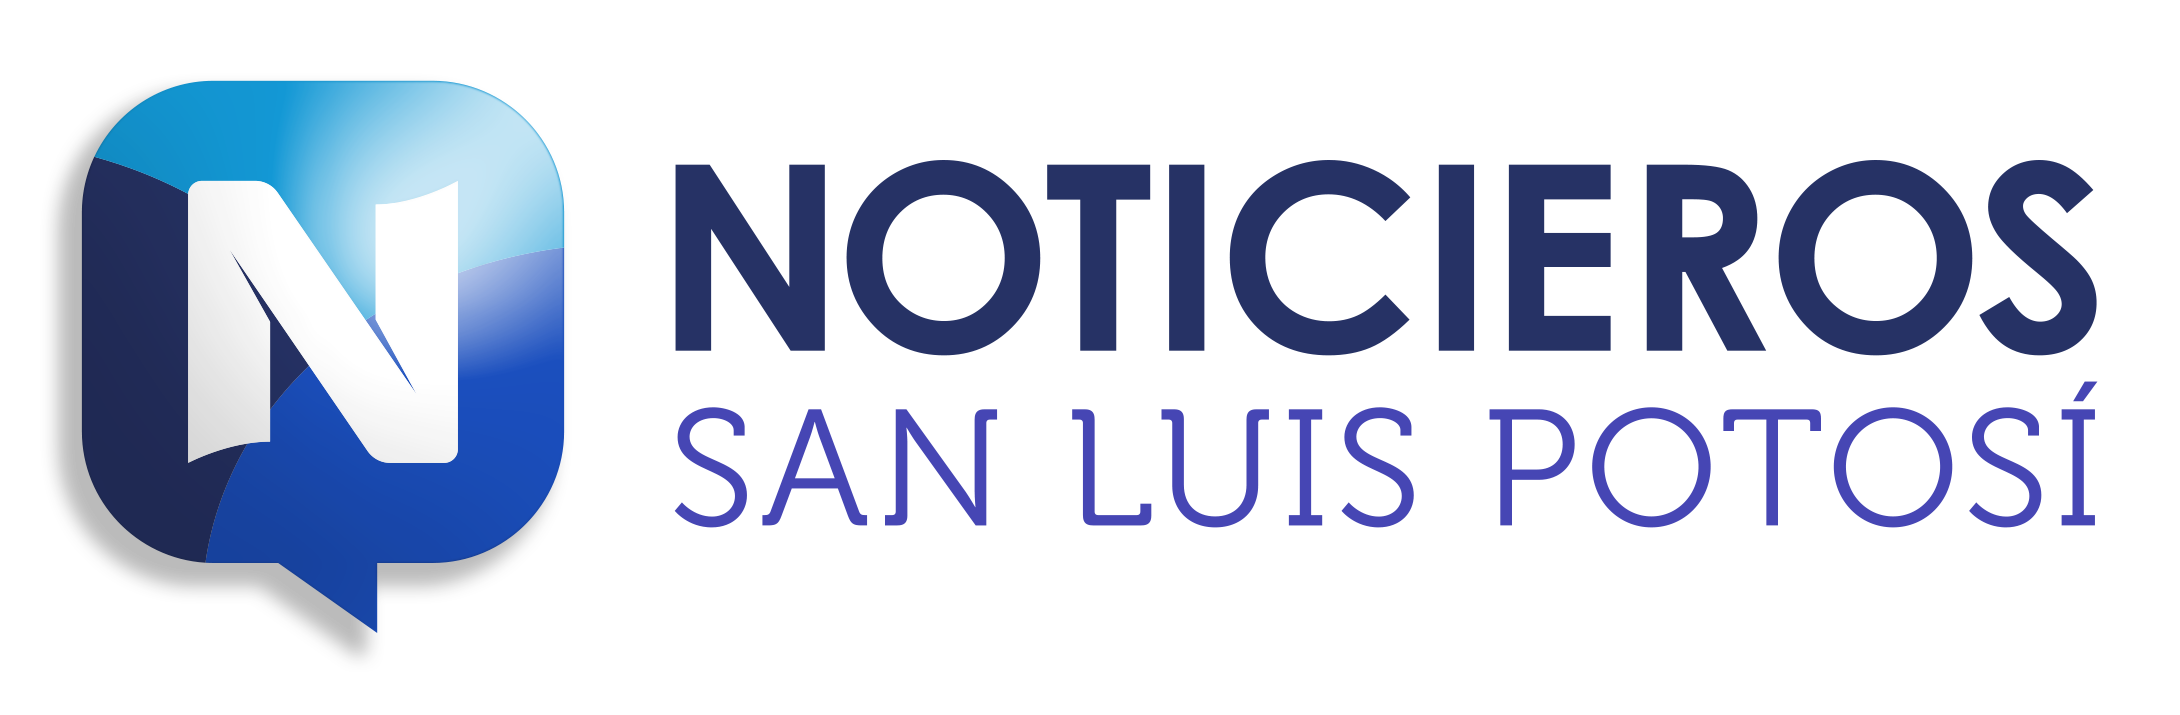 Noticieros San Luis Potosí